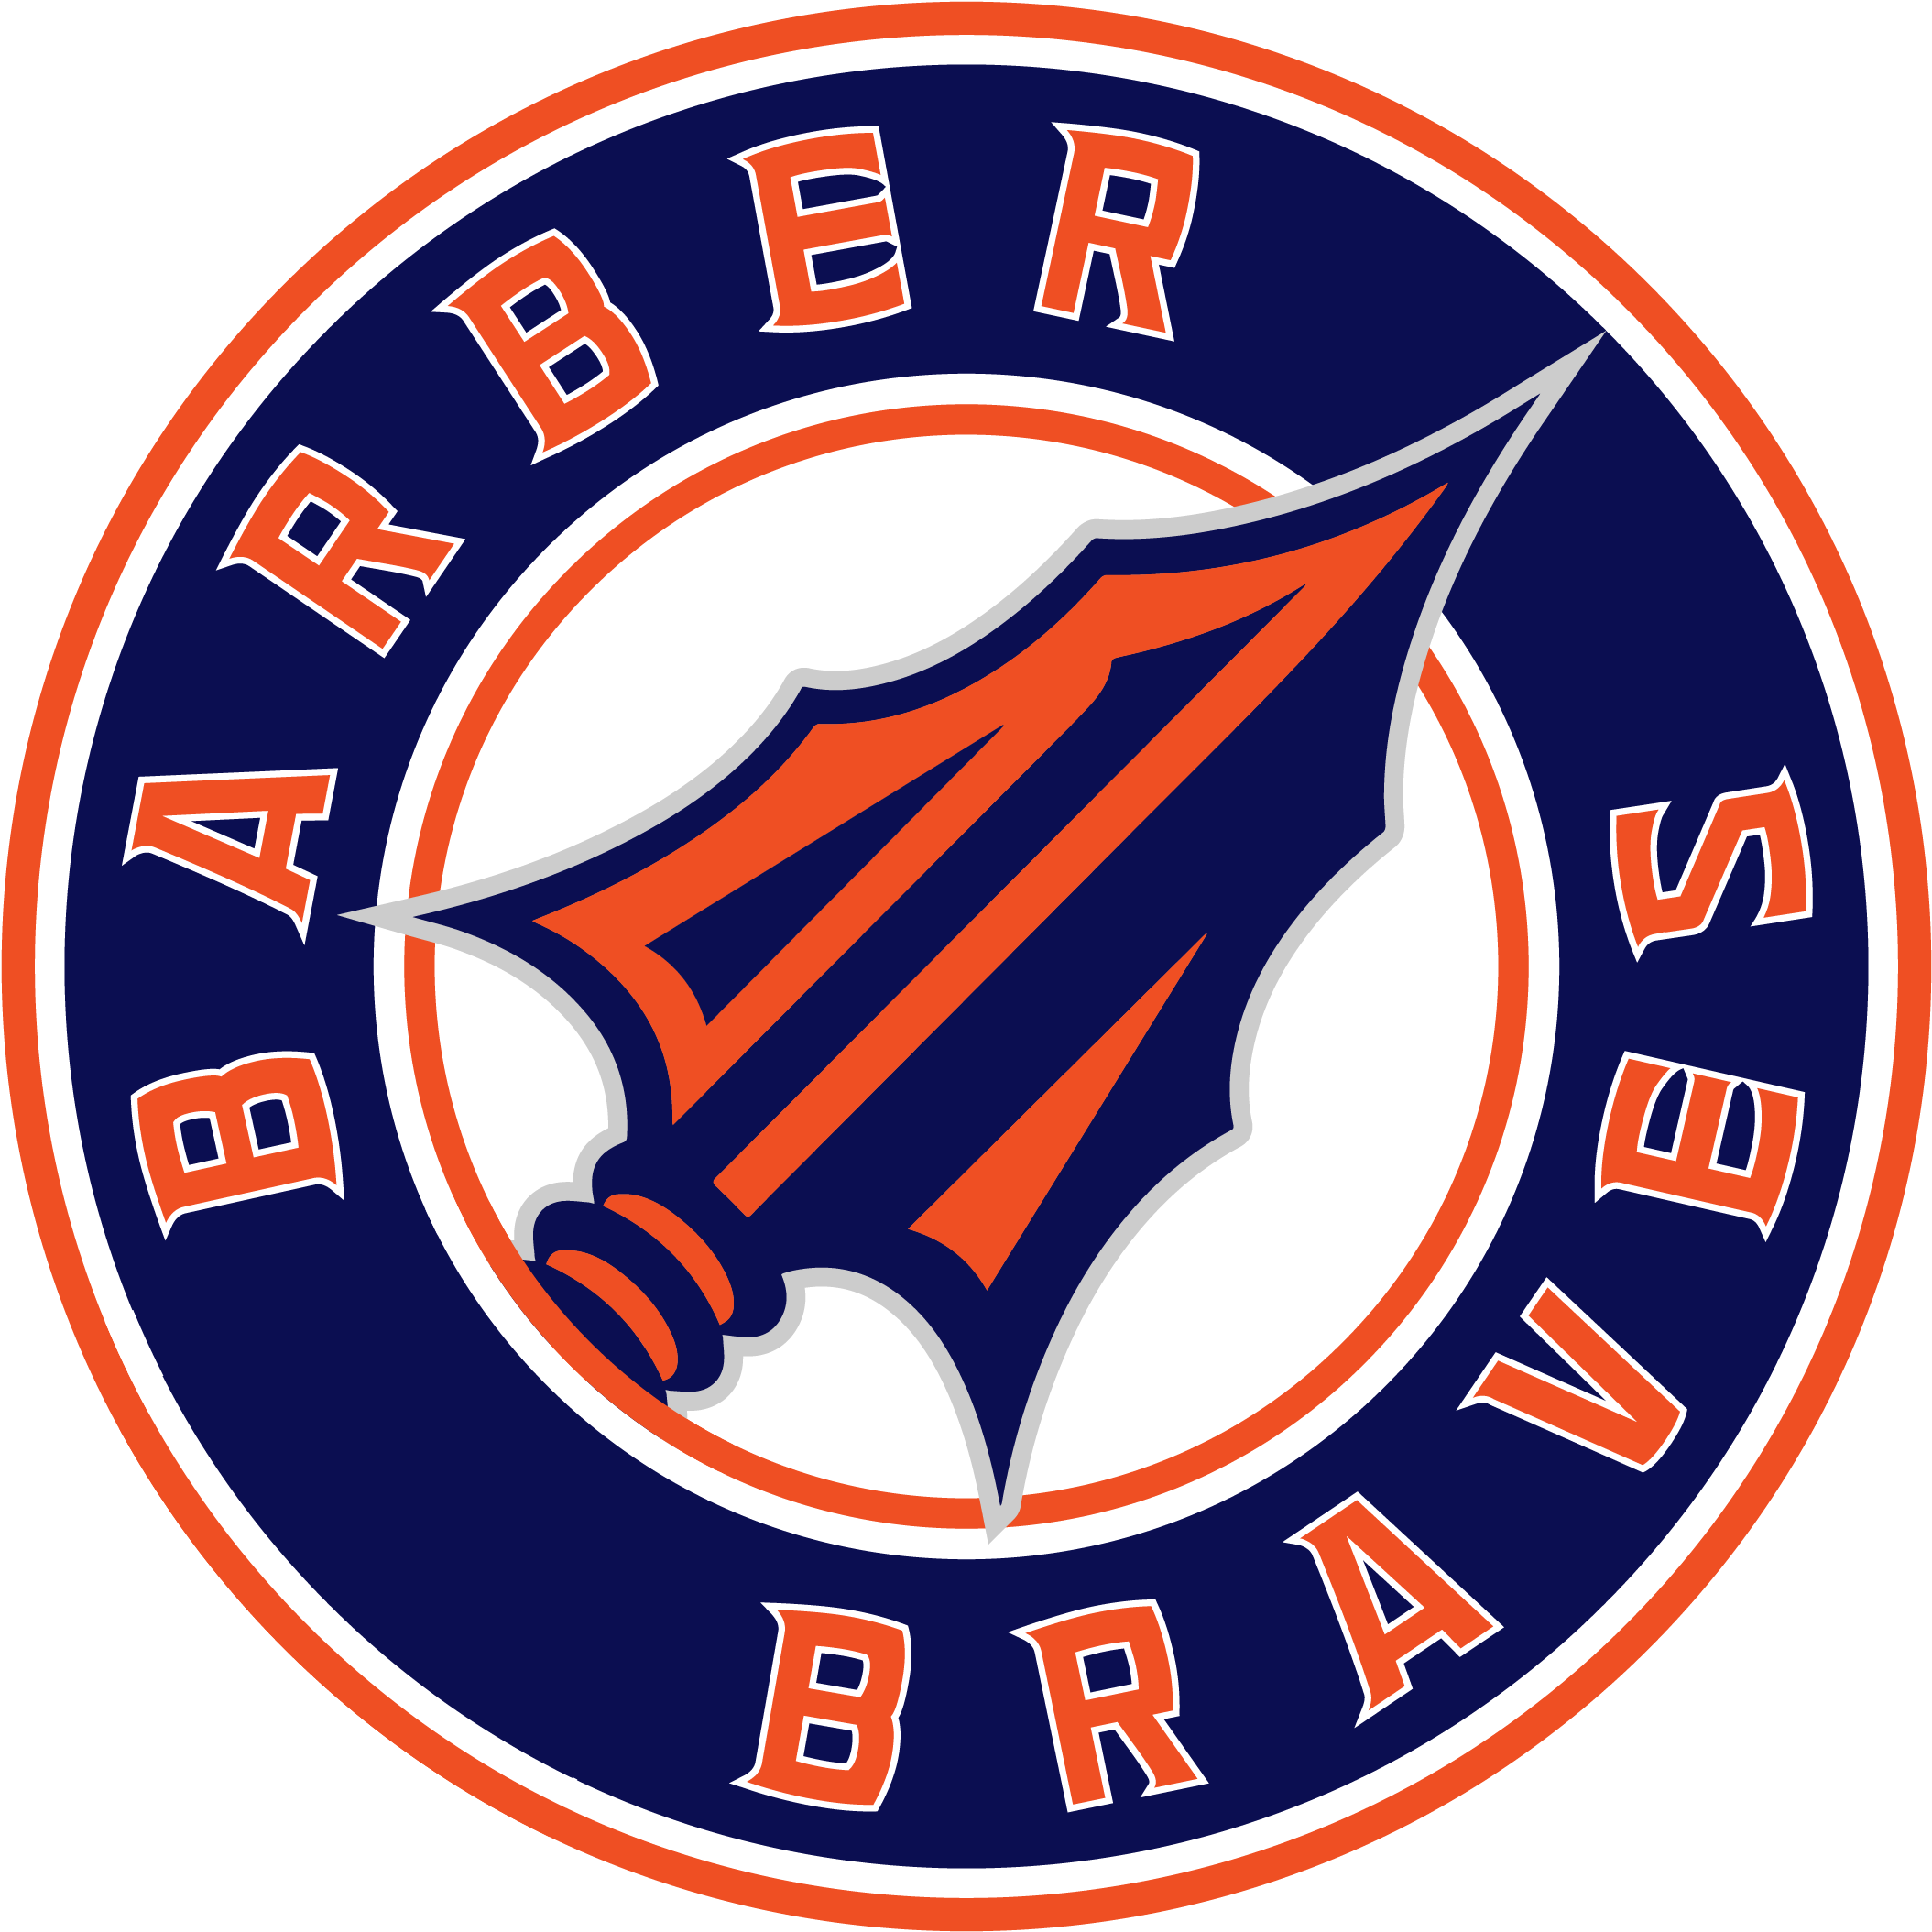 Barber Logo - Emblem (2609x2612)